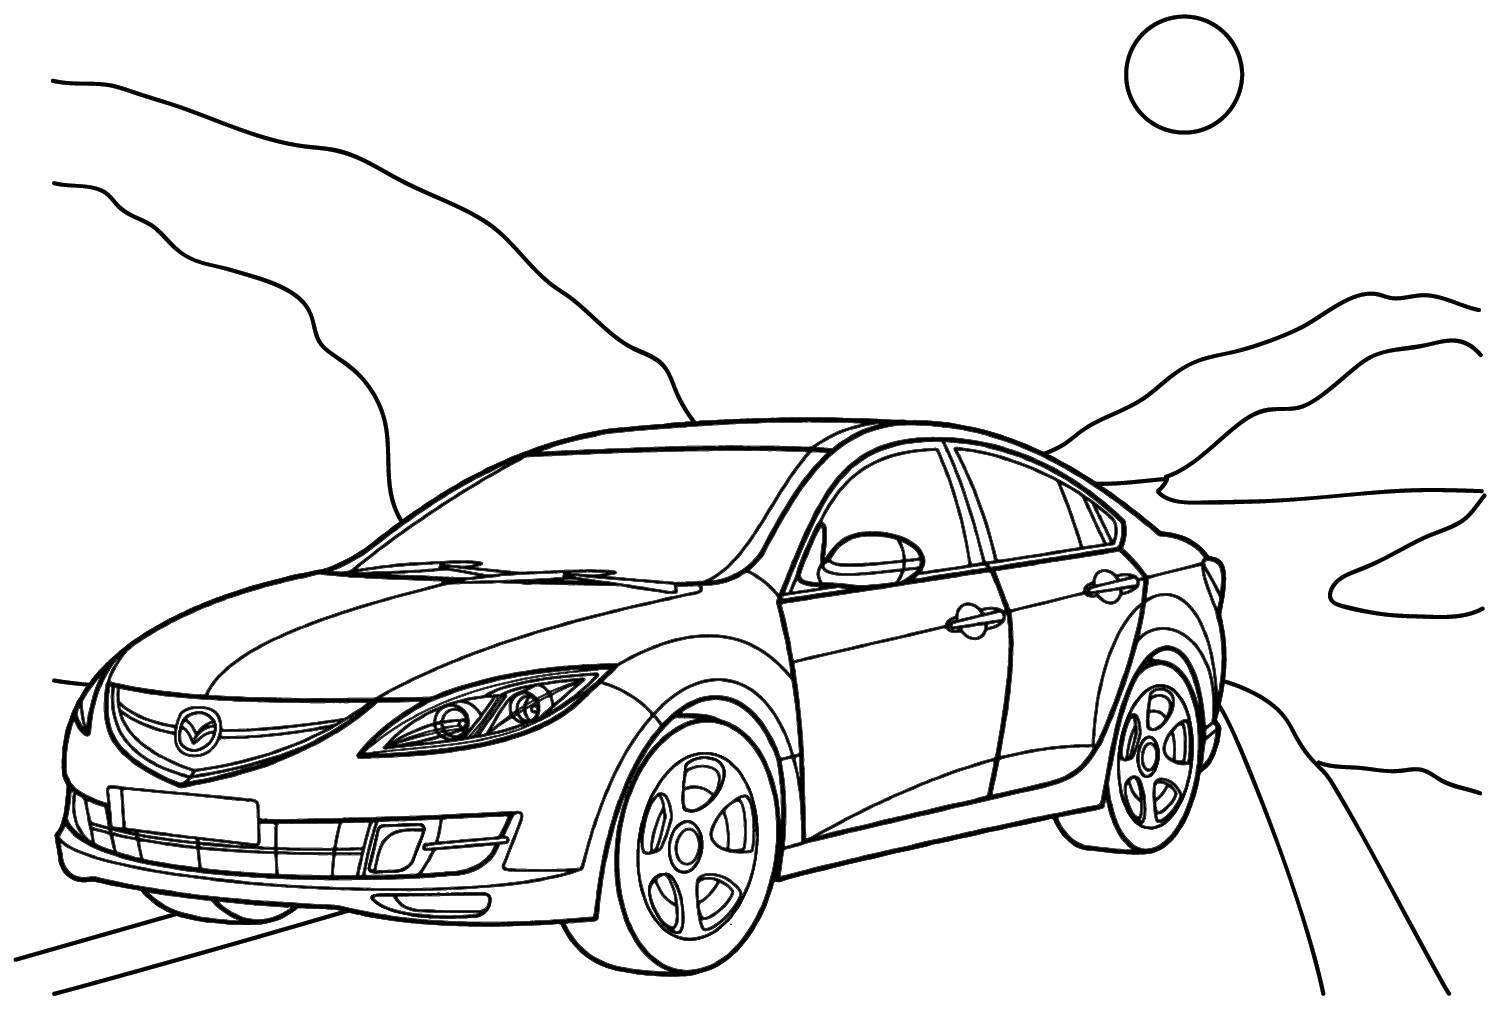 Mazda 6 Sedan Coloring Page from Mazda